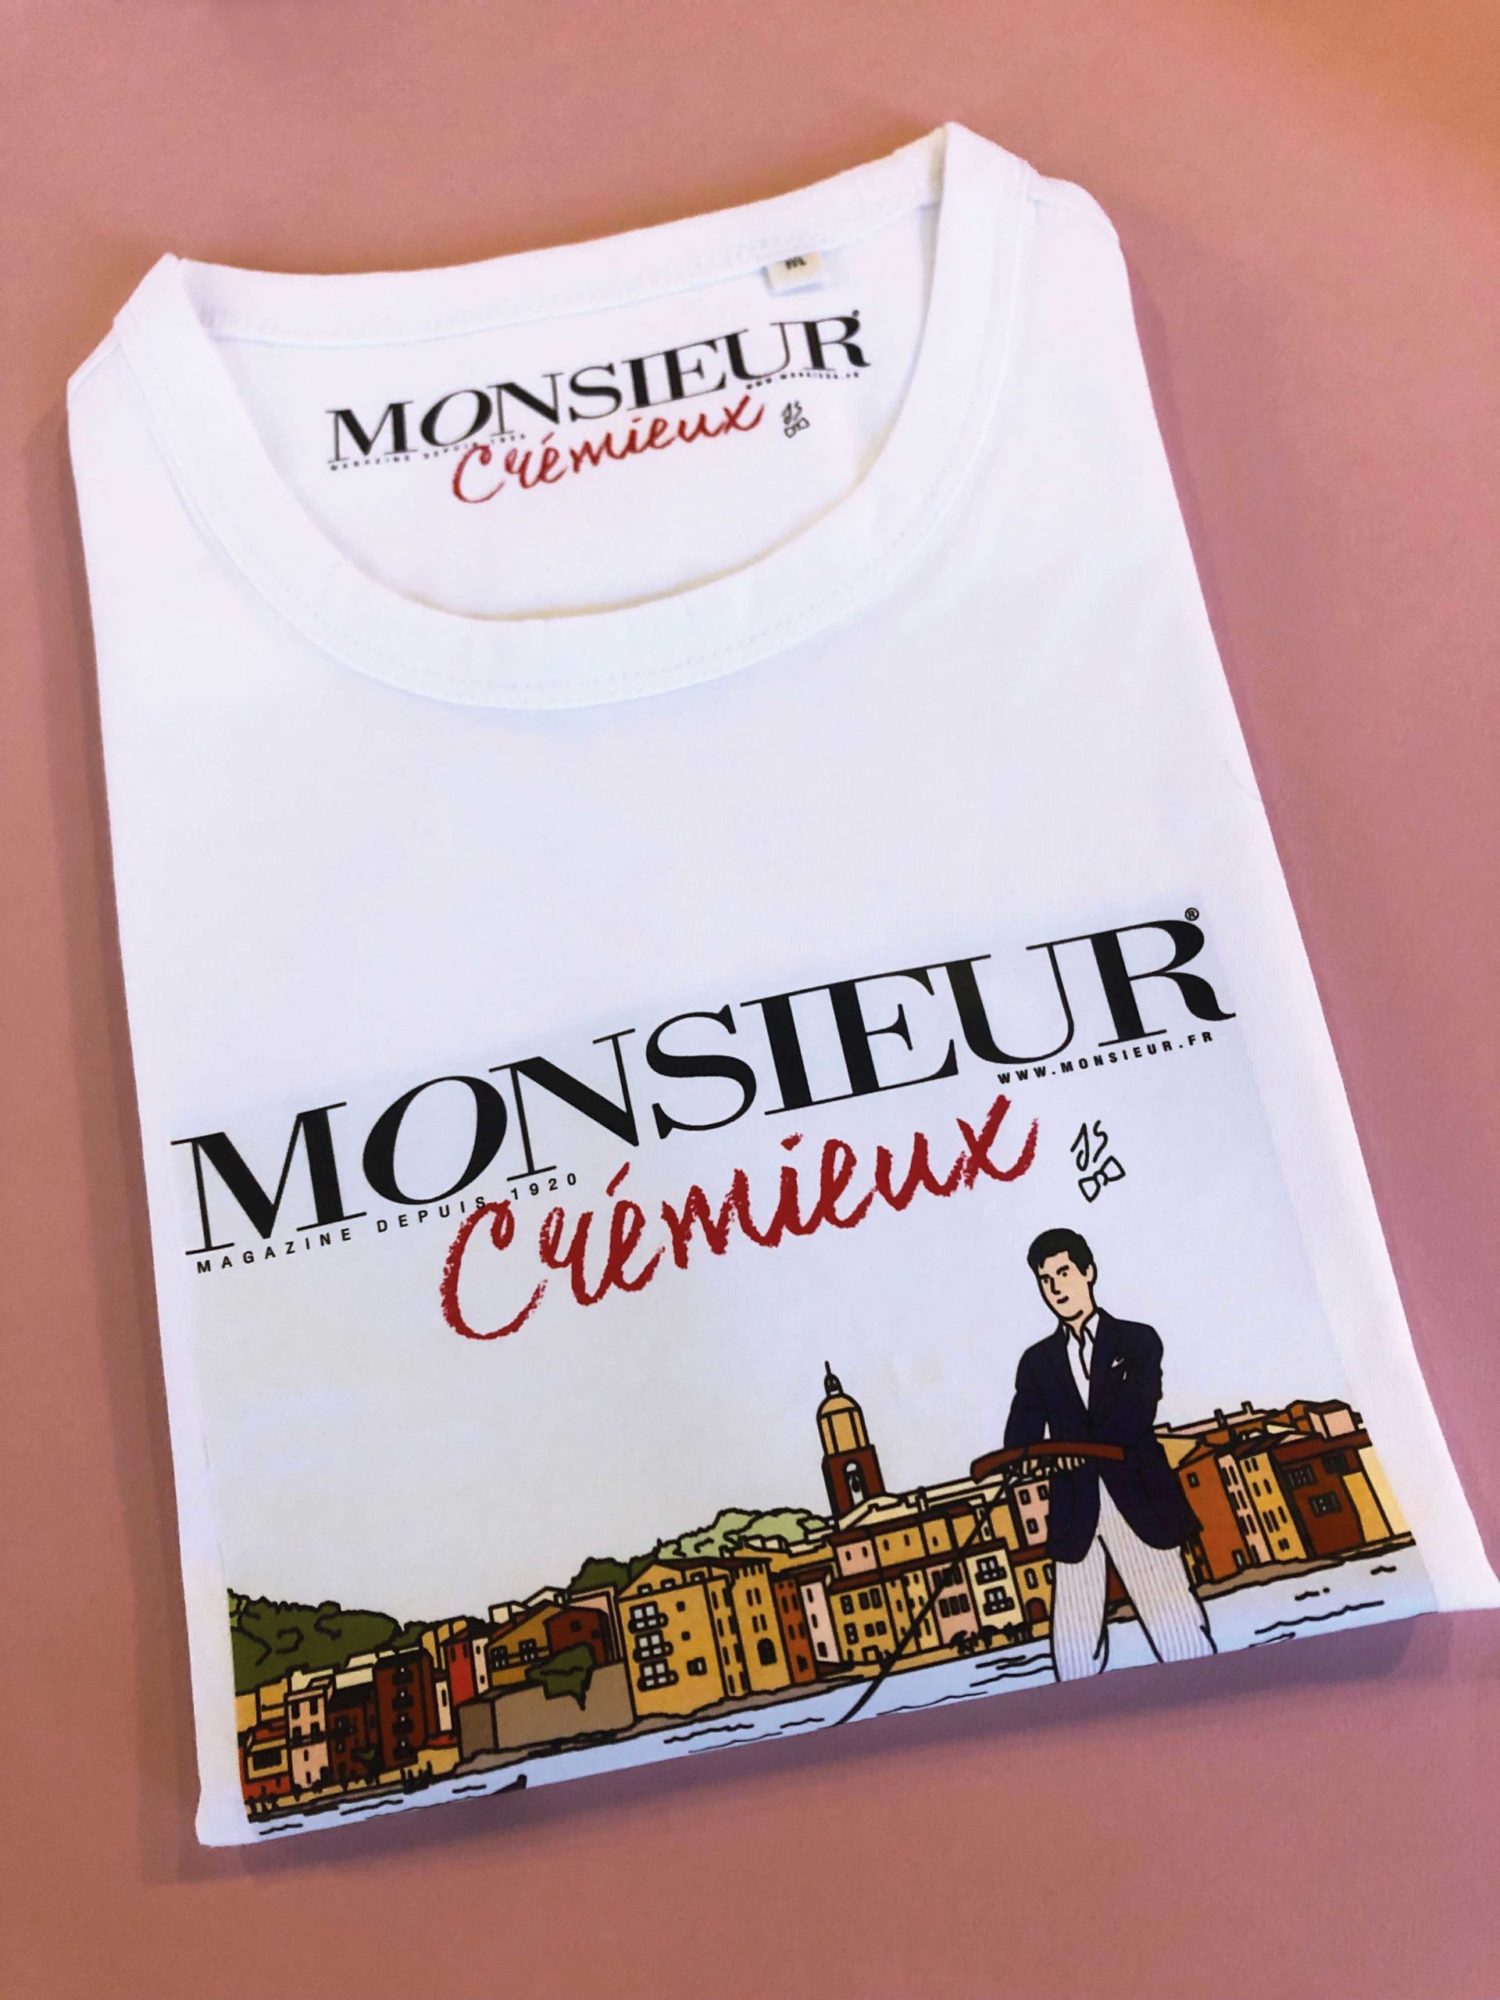 Tee-Shirt "Monsieur Crémieux" par Scavini